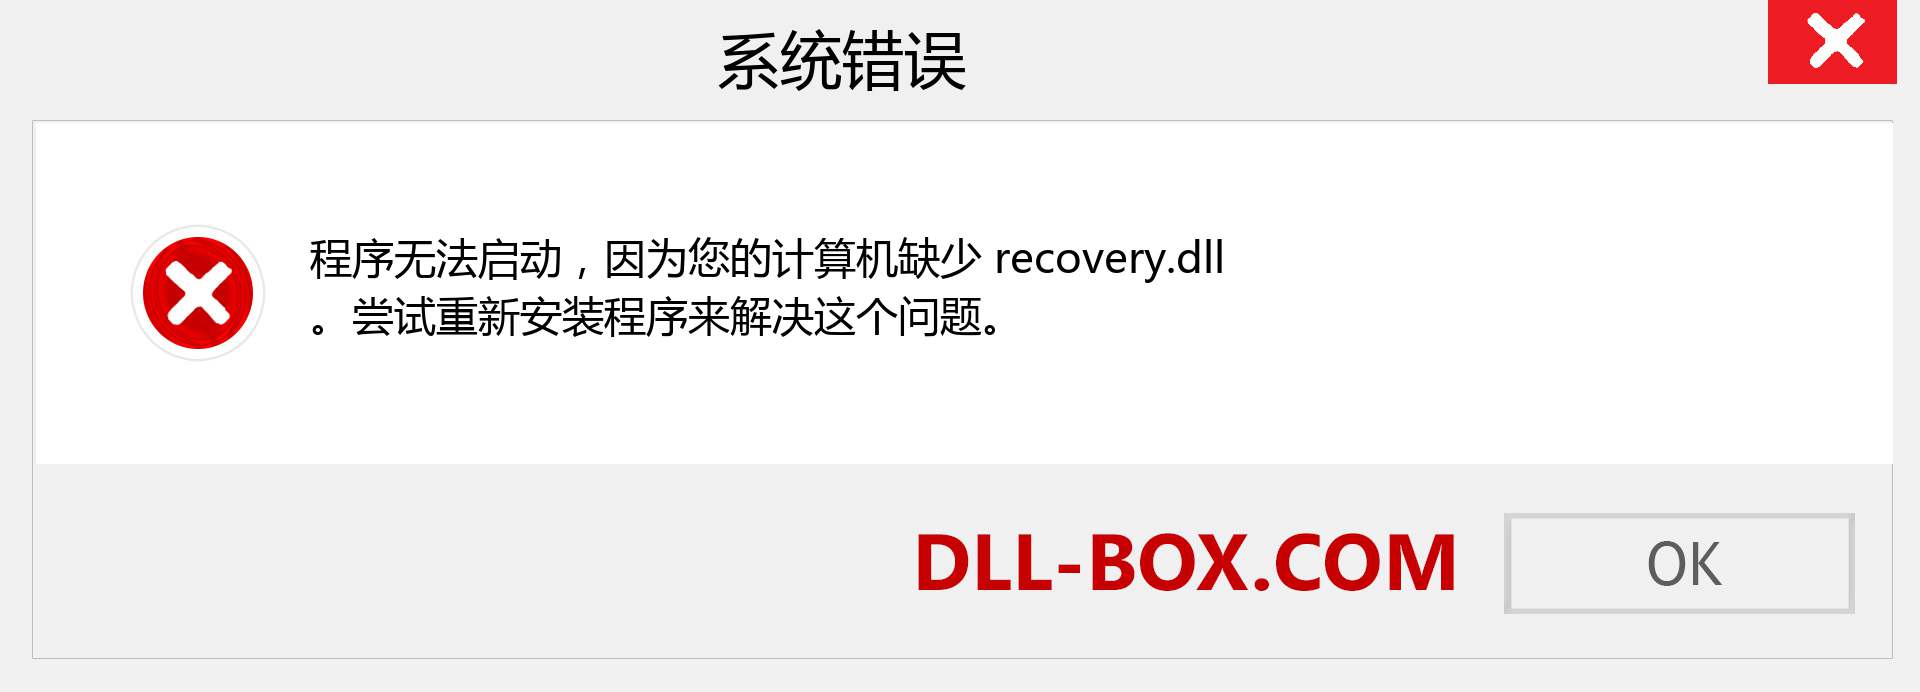 recovery.dll 文件丢失？。 适用于 Windows 7、8、10 的下载 - 修复 Windows、照片、图像上的 recovery dll 丢失错误